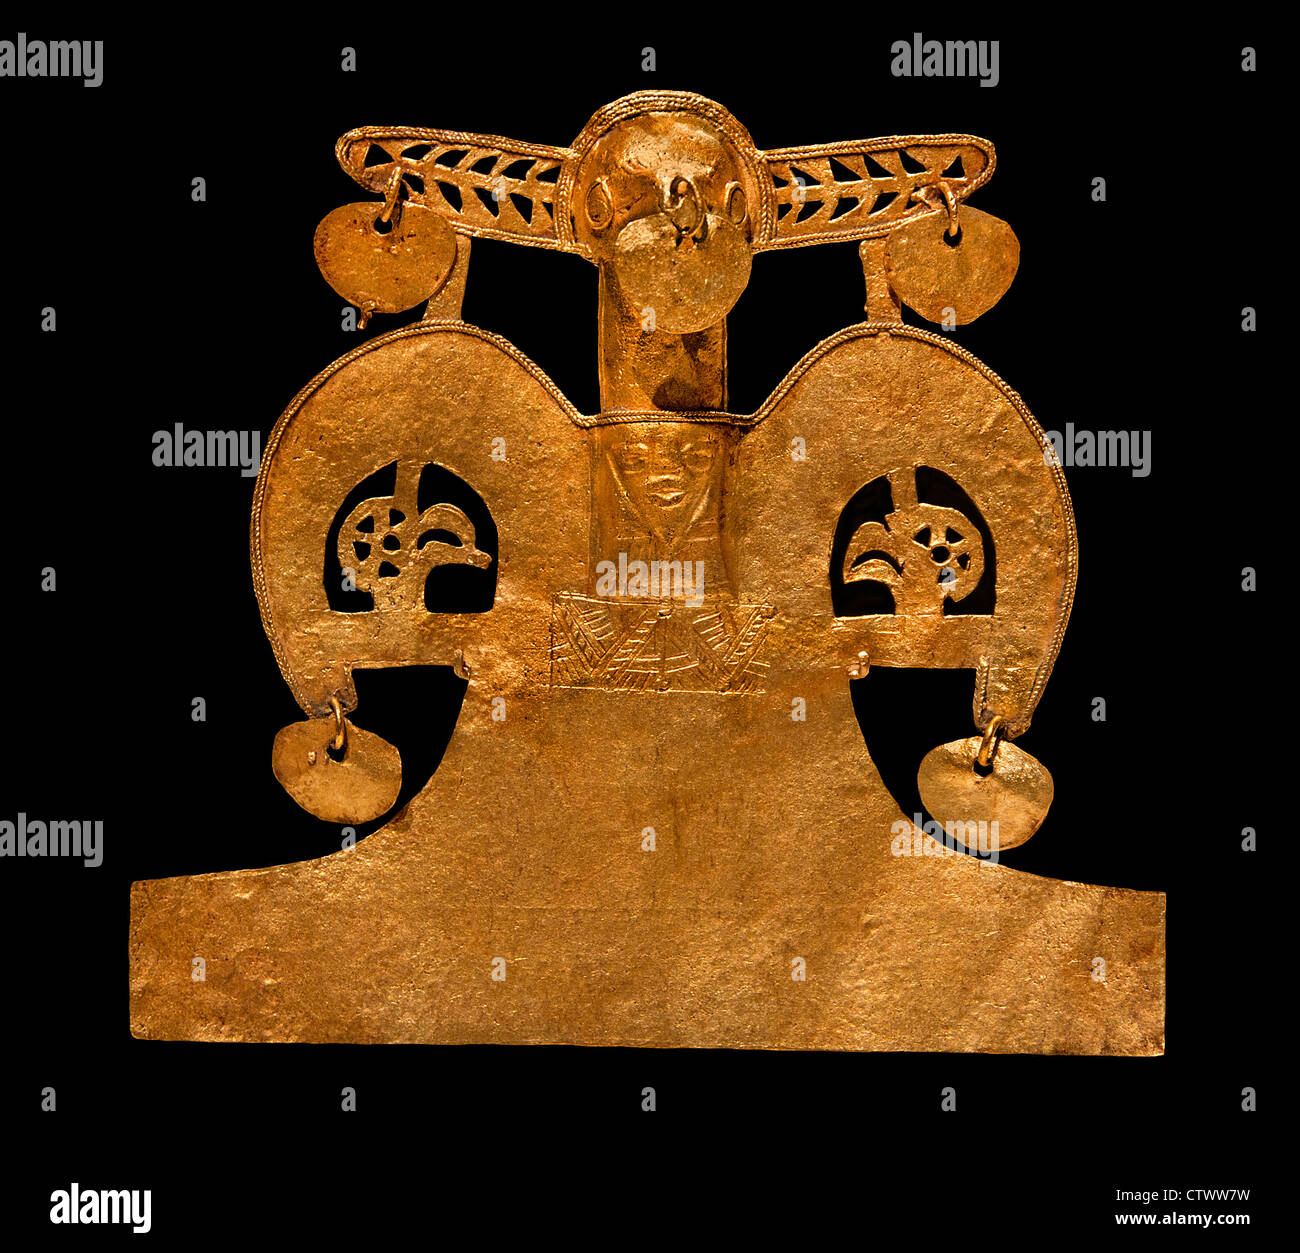 Telecomando di uccello 10th-XVI secolo Colombia Cultura Muisca Gold H. 4 x W. 4 3/8 x D. 3/4 in. (10.2 x 11.1 x 1.9 cm) colombiano Foto Stock